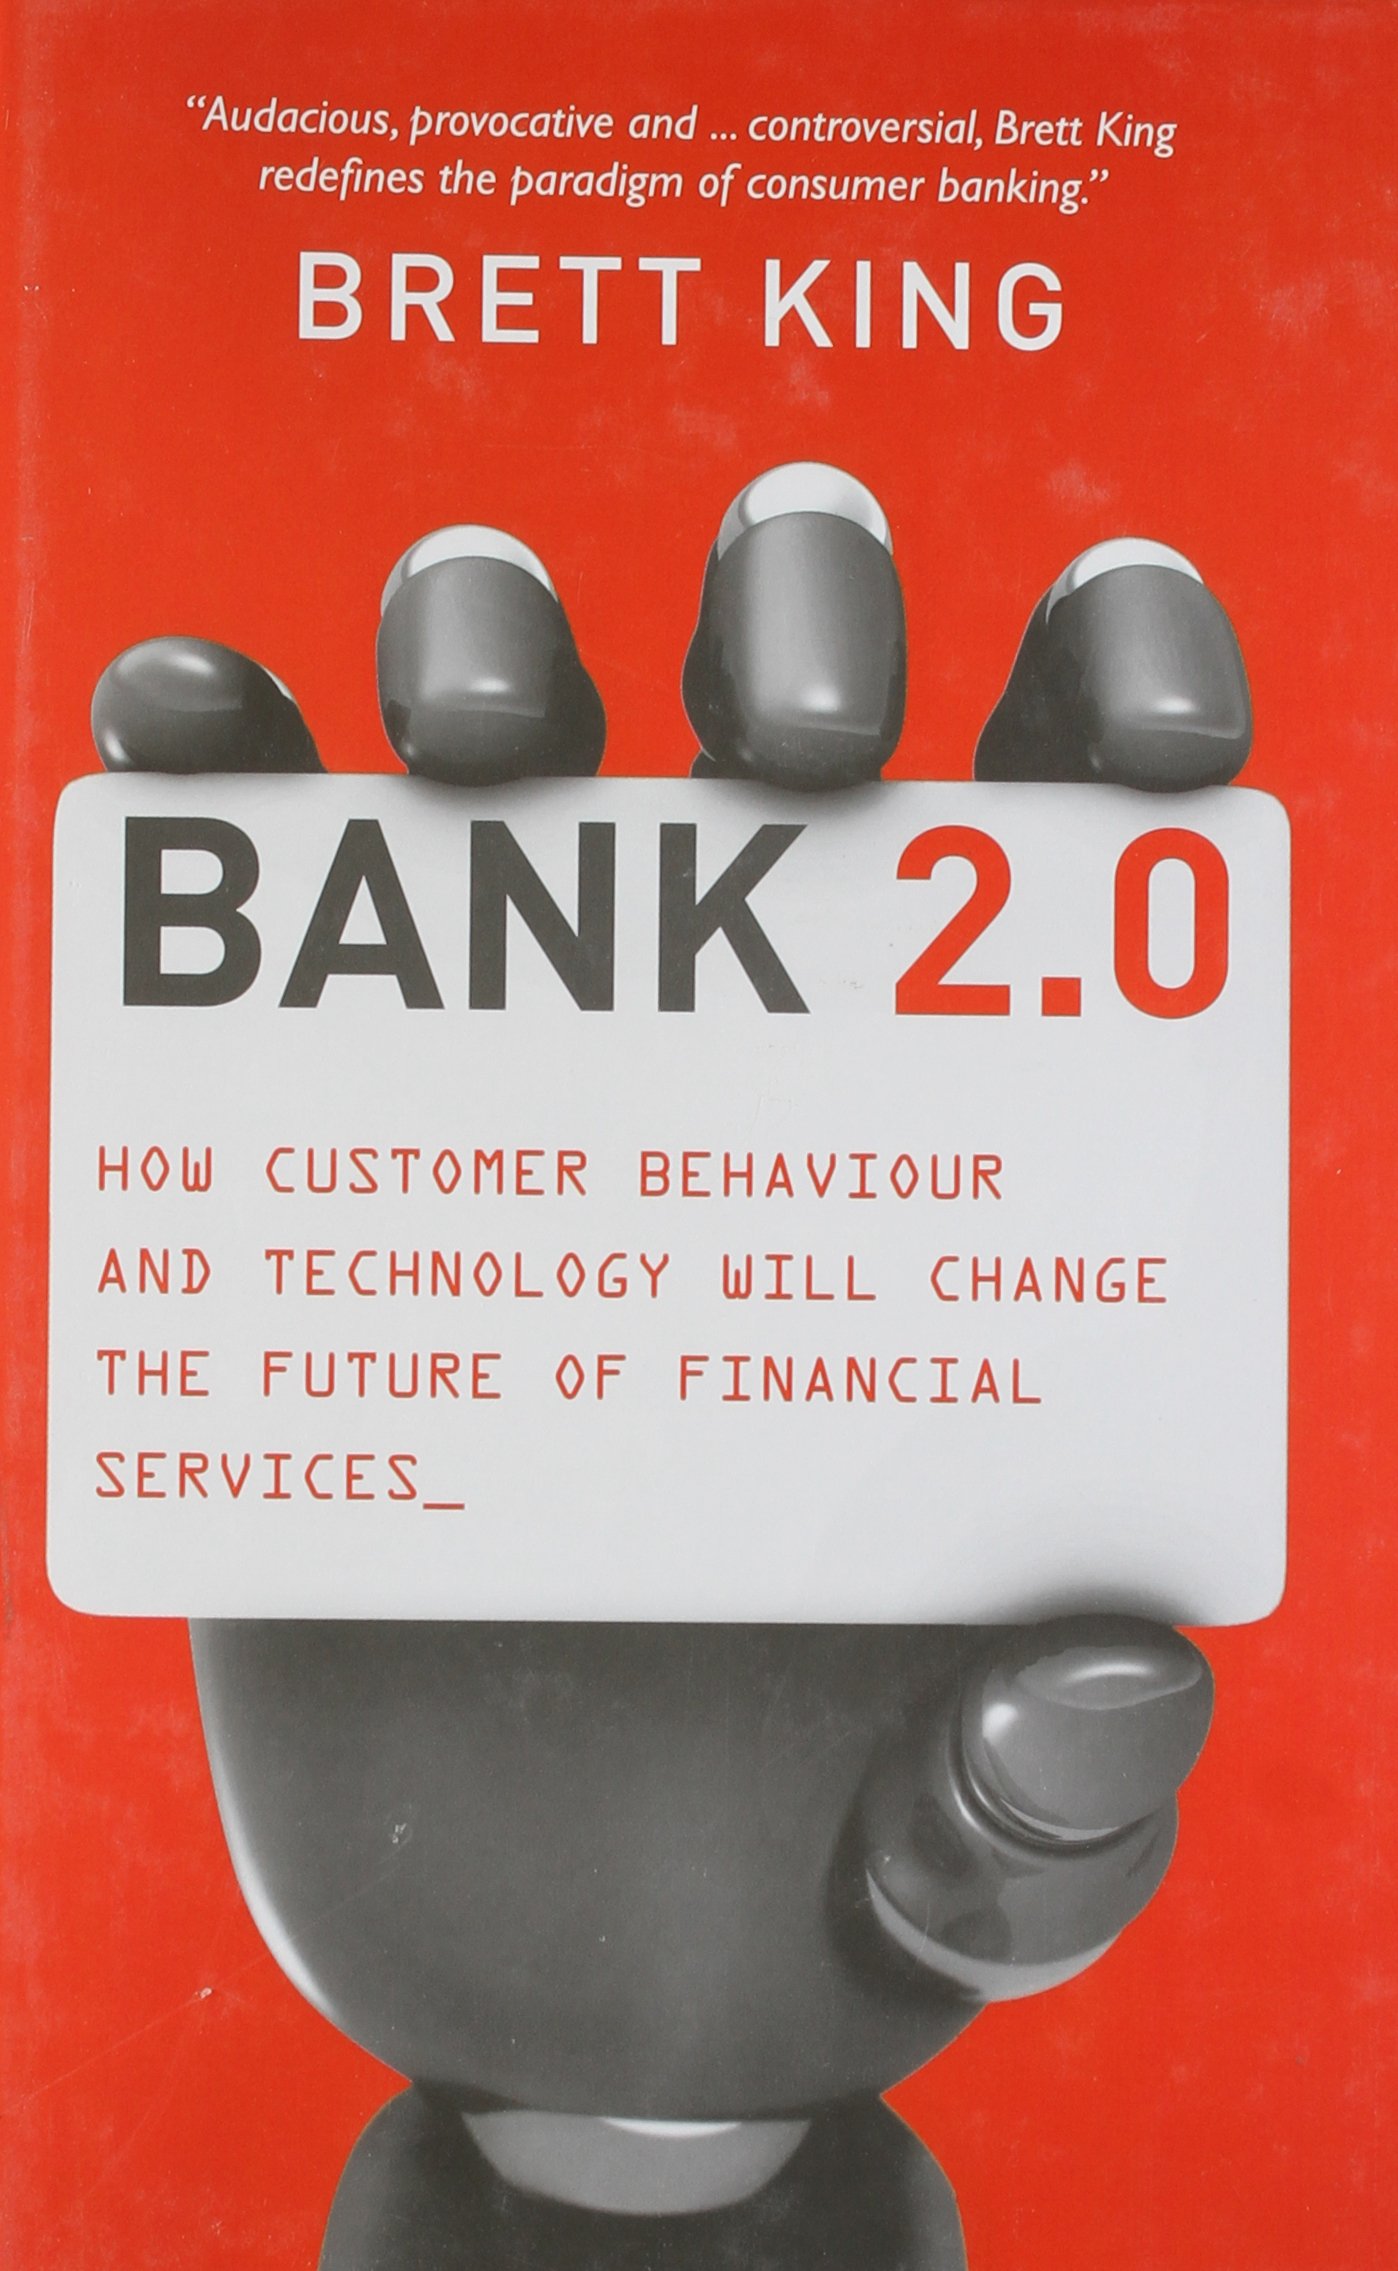 Bank 2.0 by Brett King